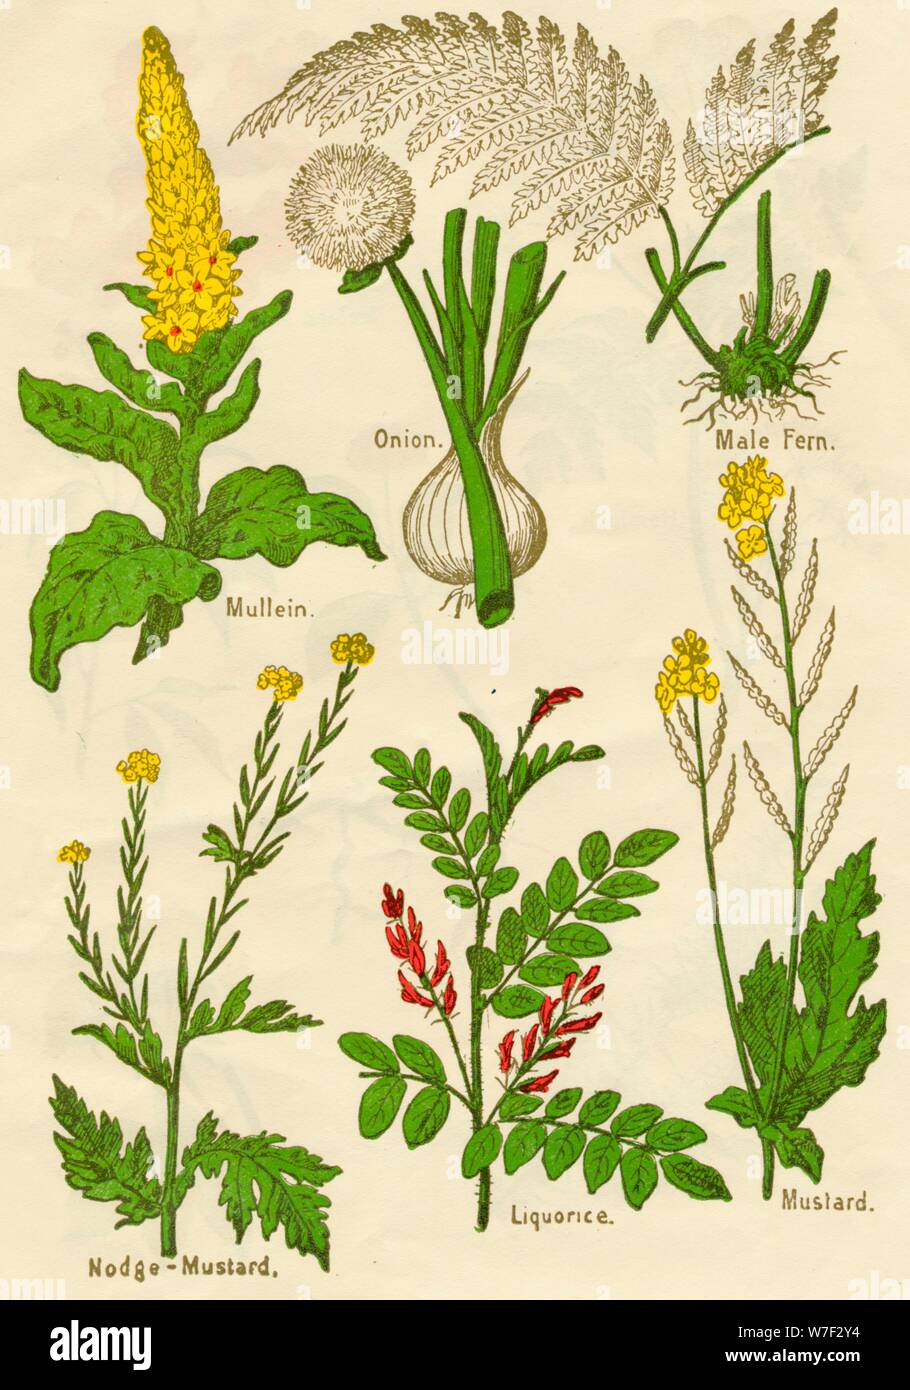 Flowers: Mullein, Onion, Male Fern, Nodge-Mustard, Liquorice, Mustard, c1940. Artist: Unknown. Stock Photo